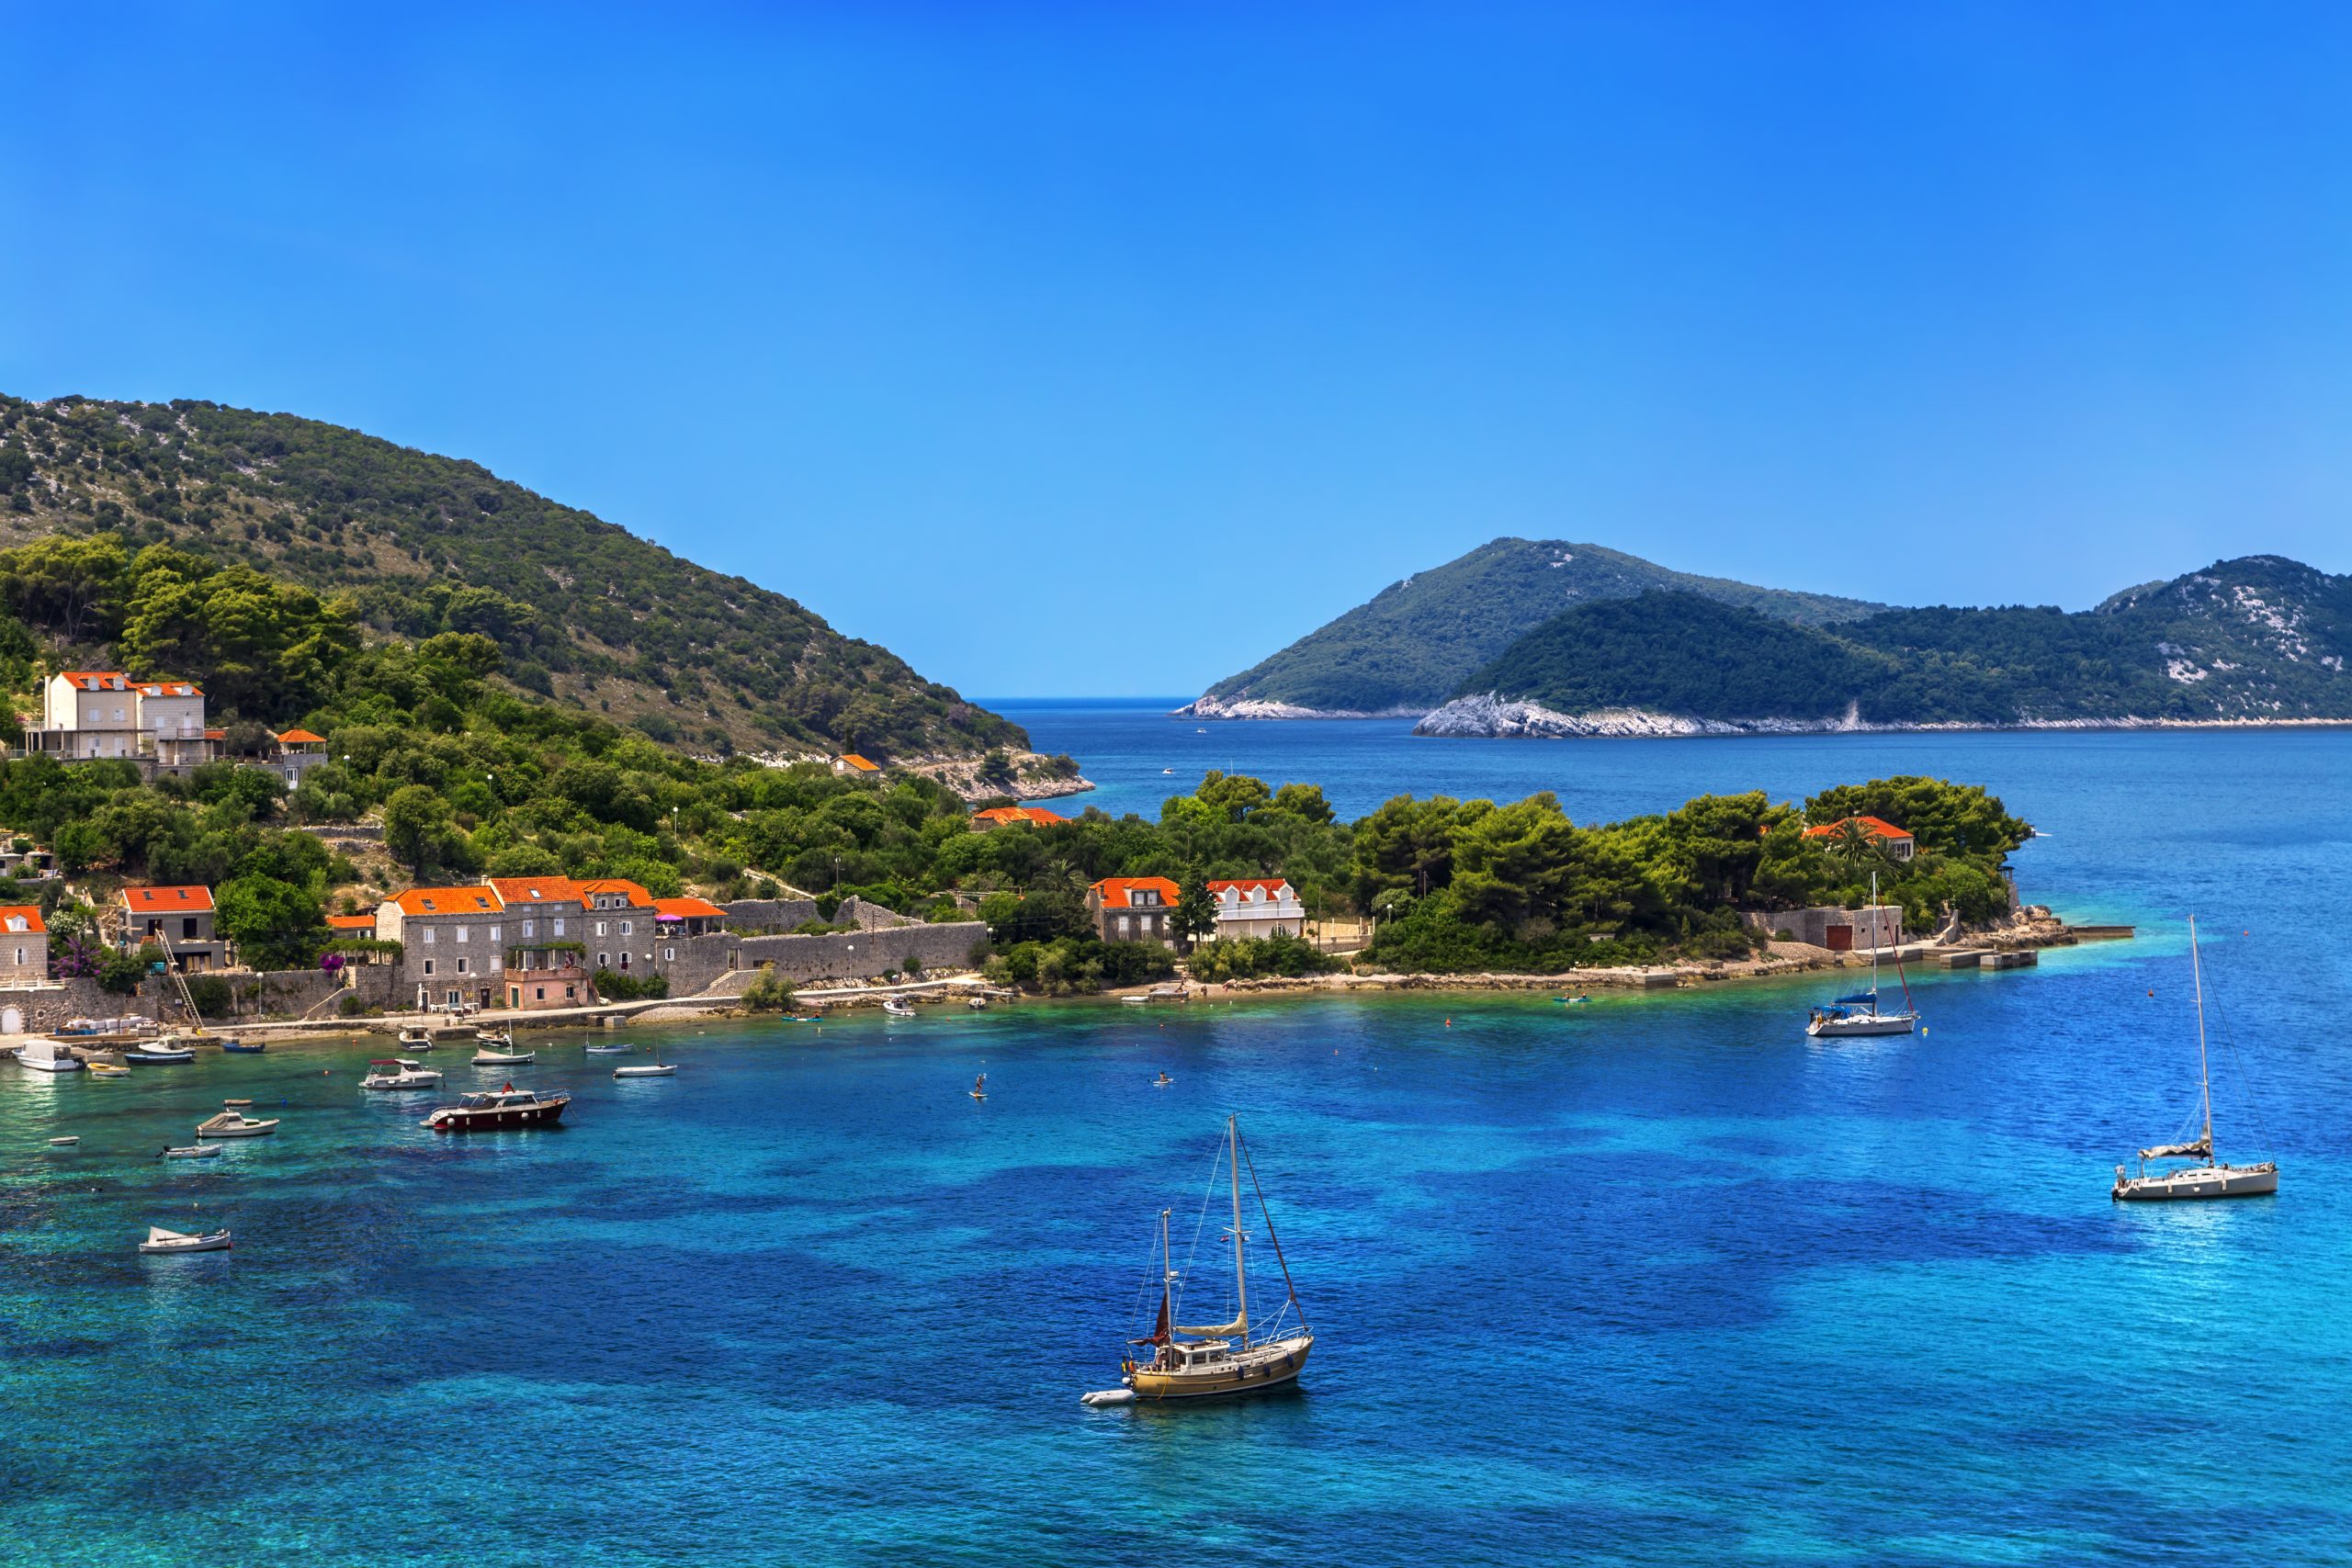 Urlaub ohne Auto auf der Insel Kolocep in Kroatien